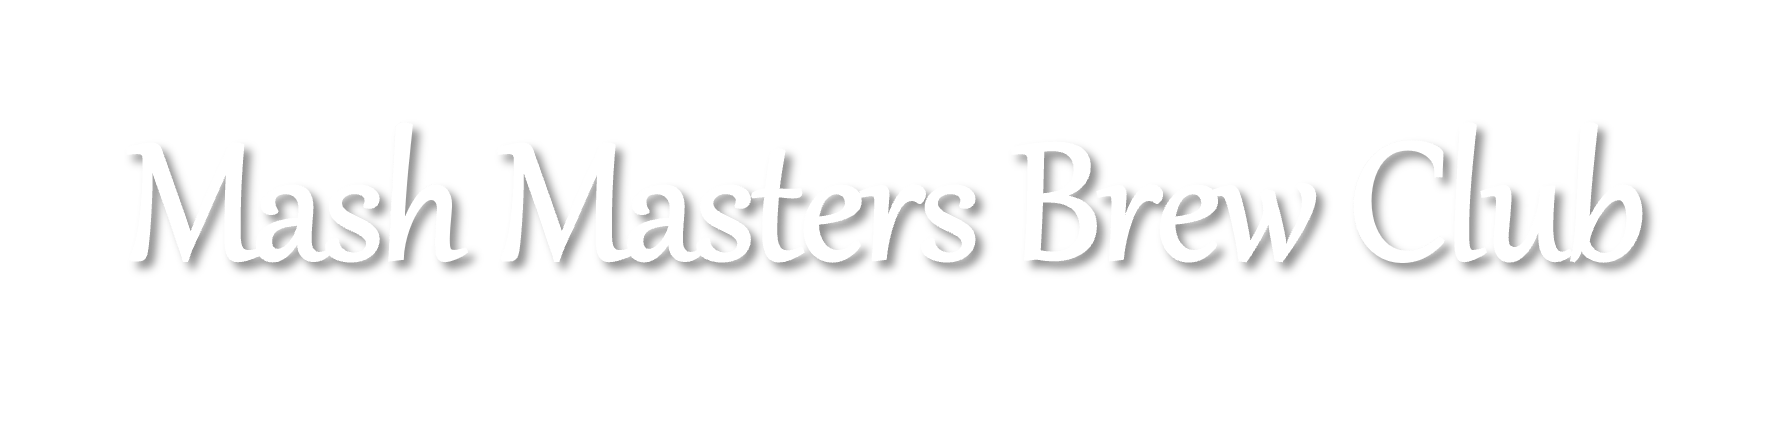 Mash Masters Brew Club logo 2